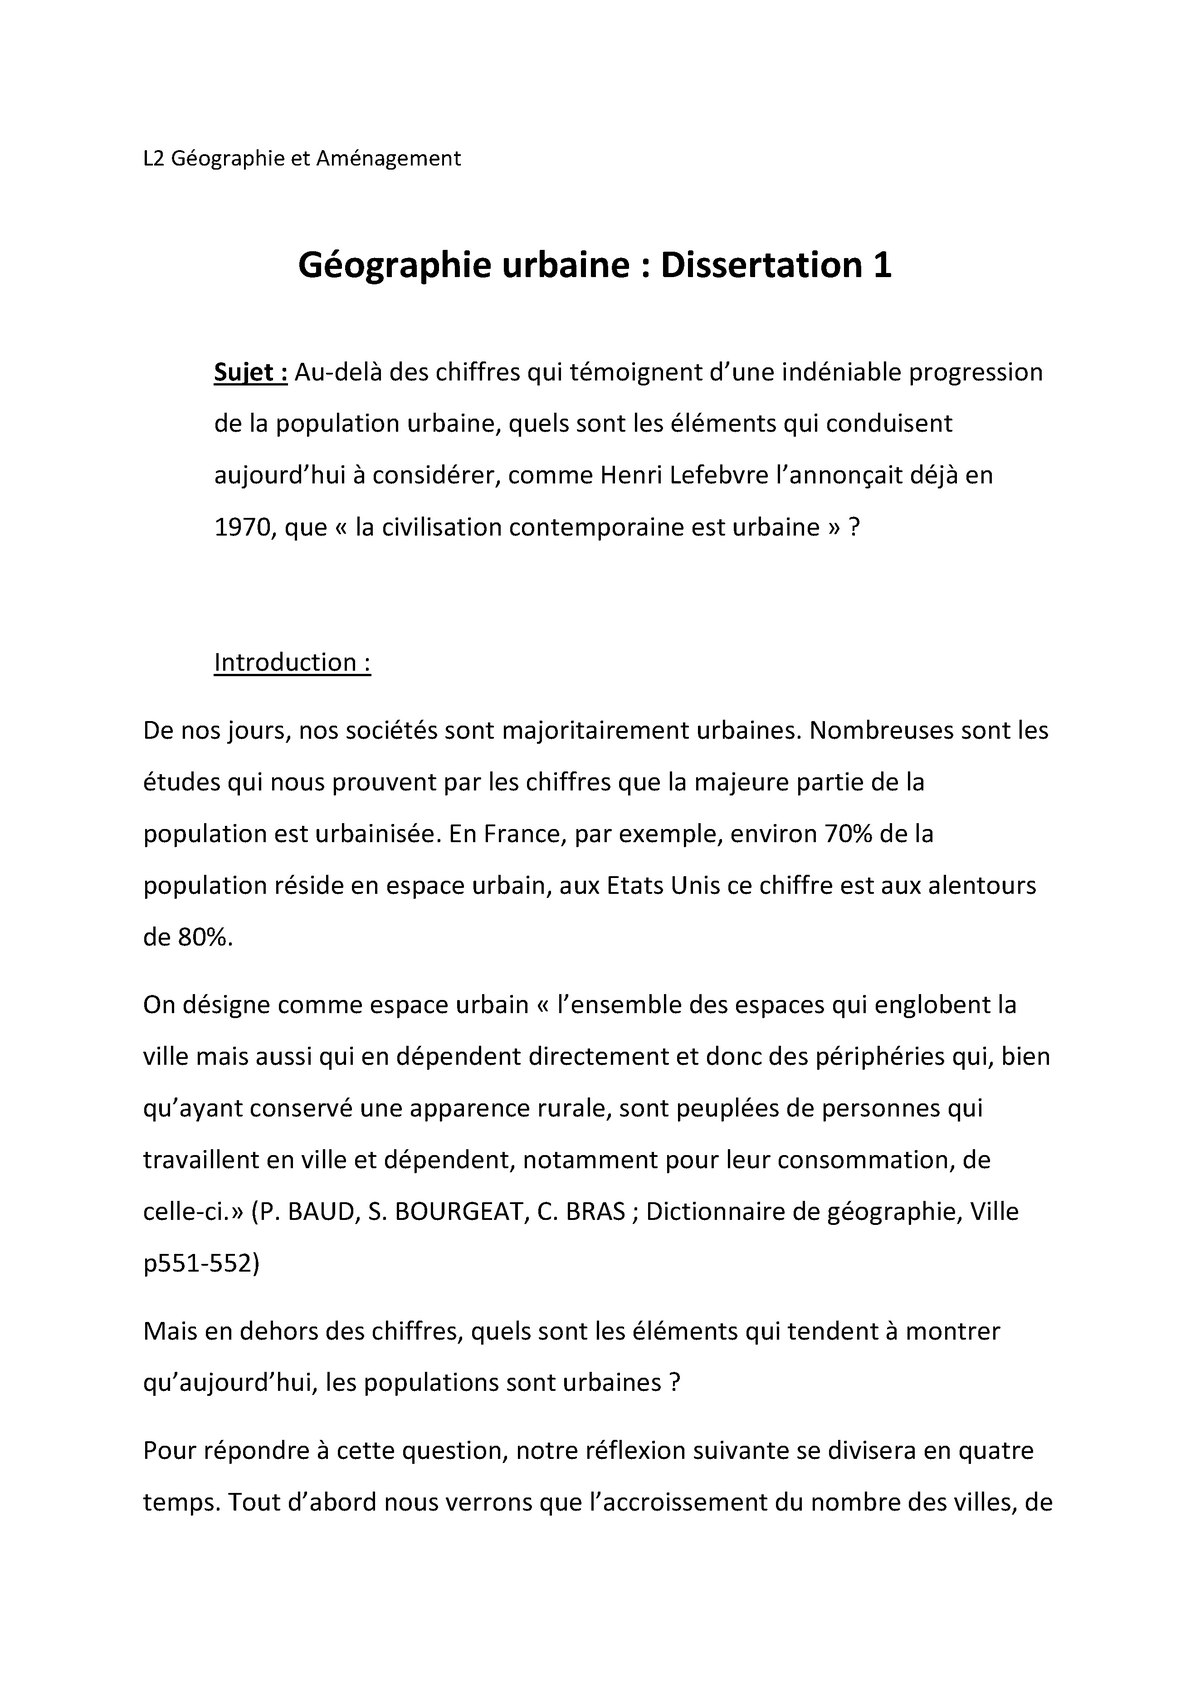 Dissertation Geographie Urbaine Warning Tt Undefined Function 32 Warning Tt Undefined Studocu